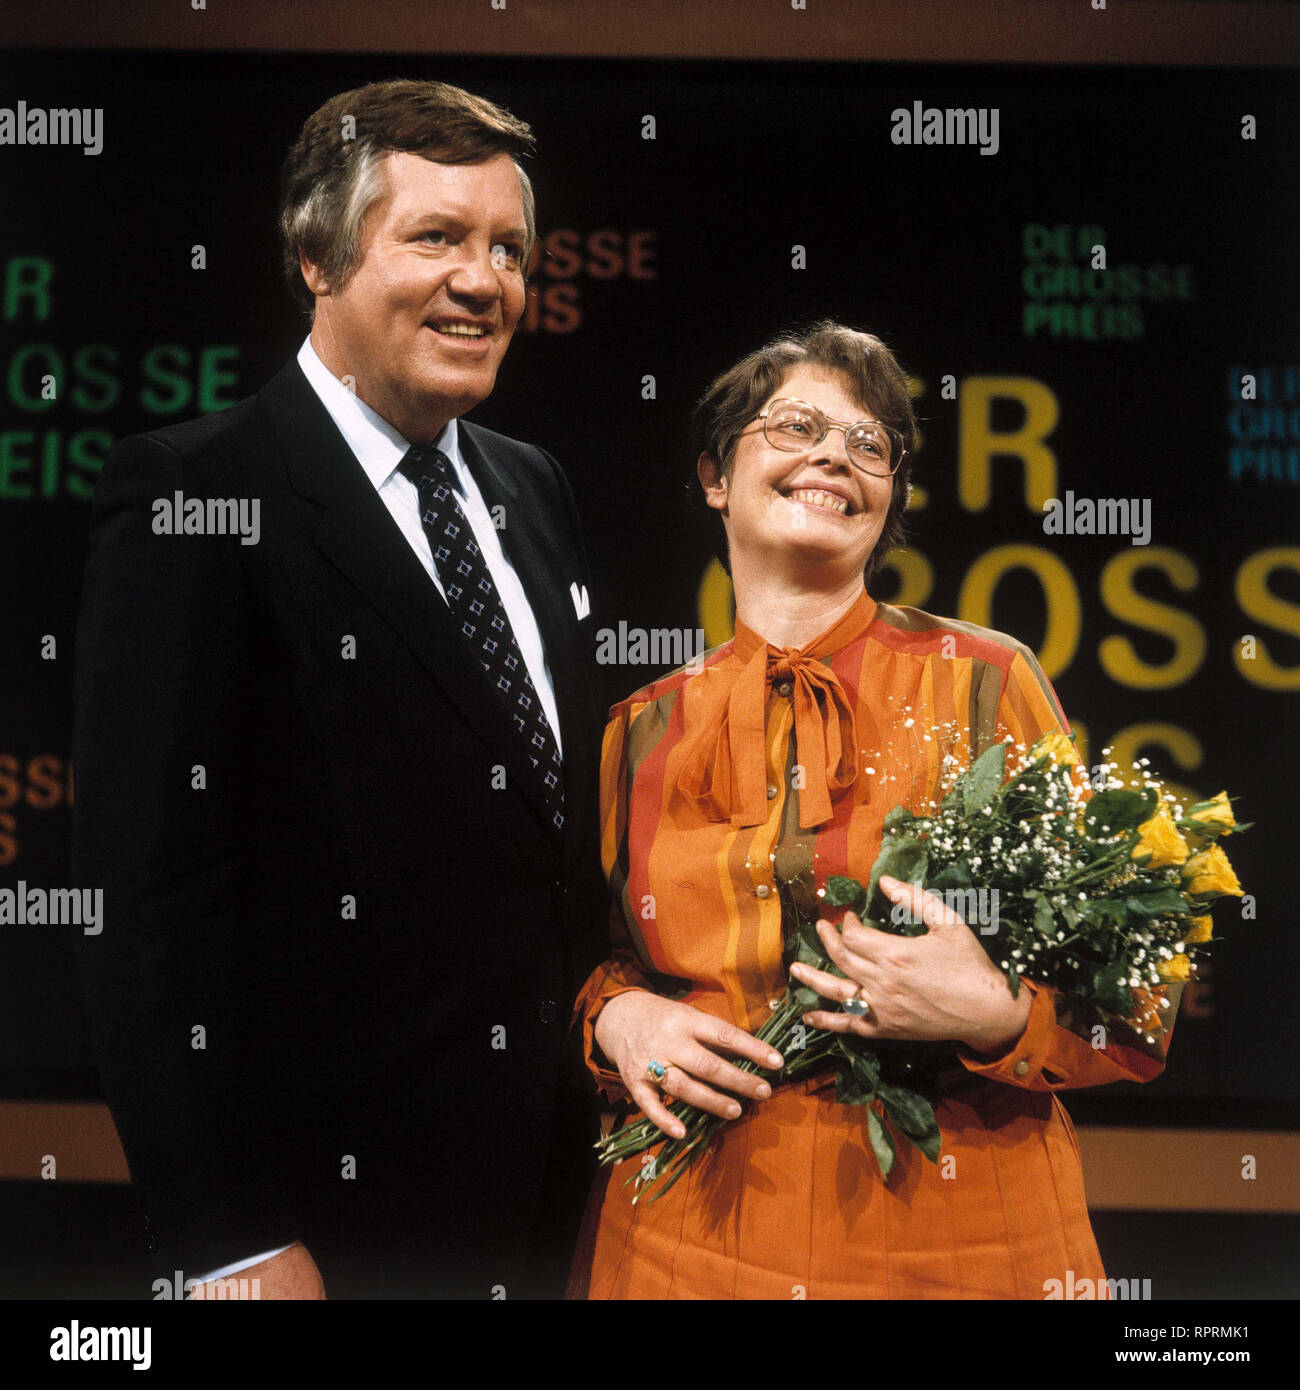 DER GROSSE PREIS WIM THOELKE mit Kandidatin und Siegerin BRIGITTE UBBELOHDE-DOERING, Sendung vom 24.9.1981 Foto Stock